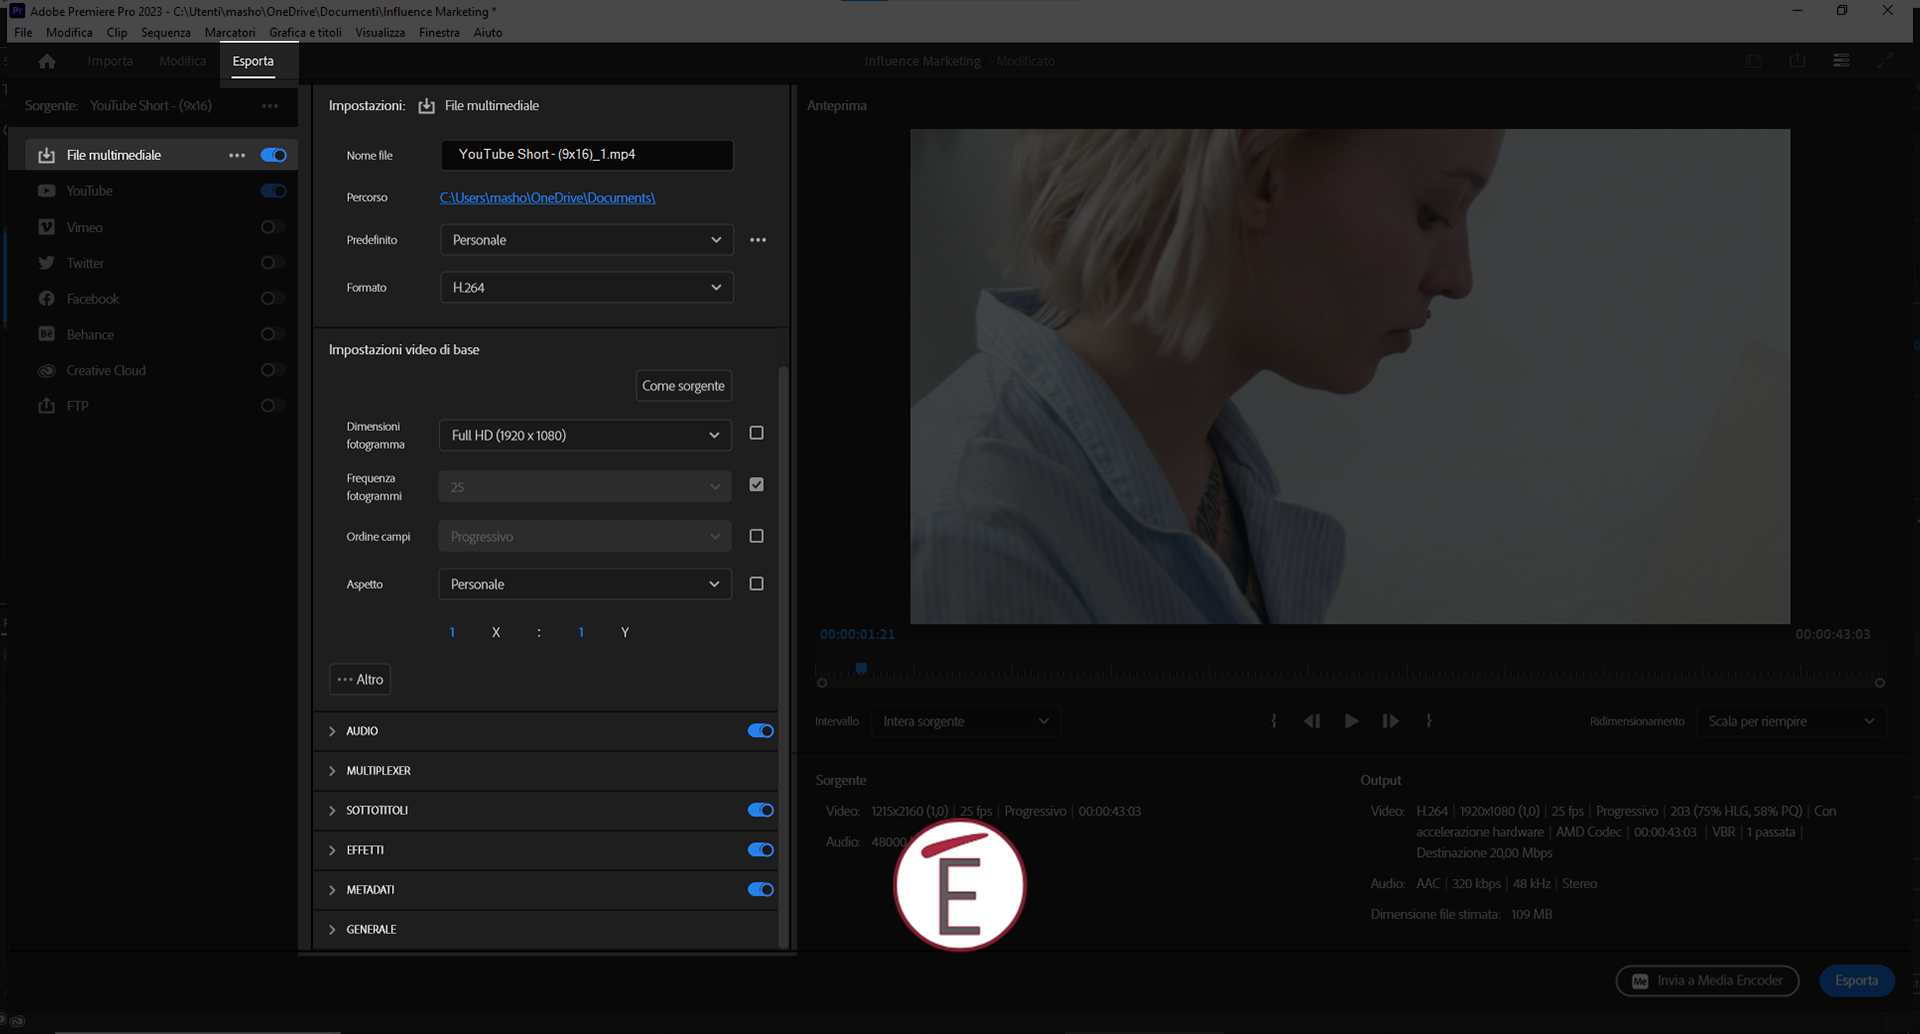 il pannello di esportazione in Adobe Premiere Pro è organizzato in maniera semplice e funzionale